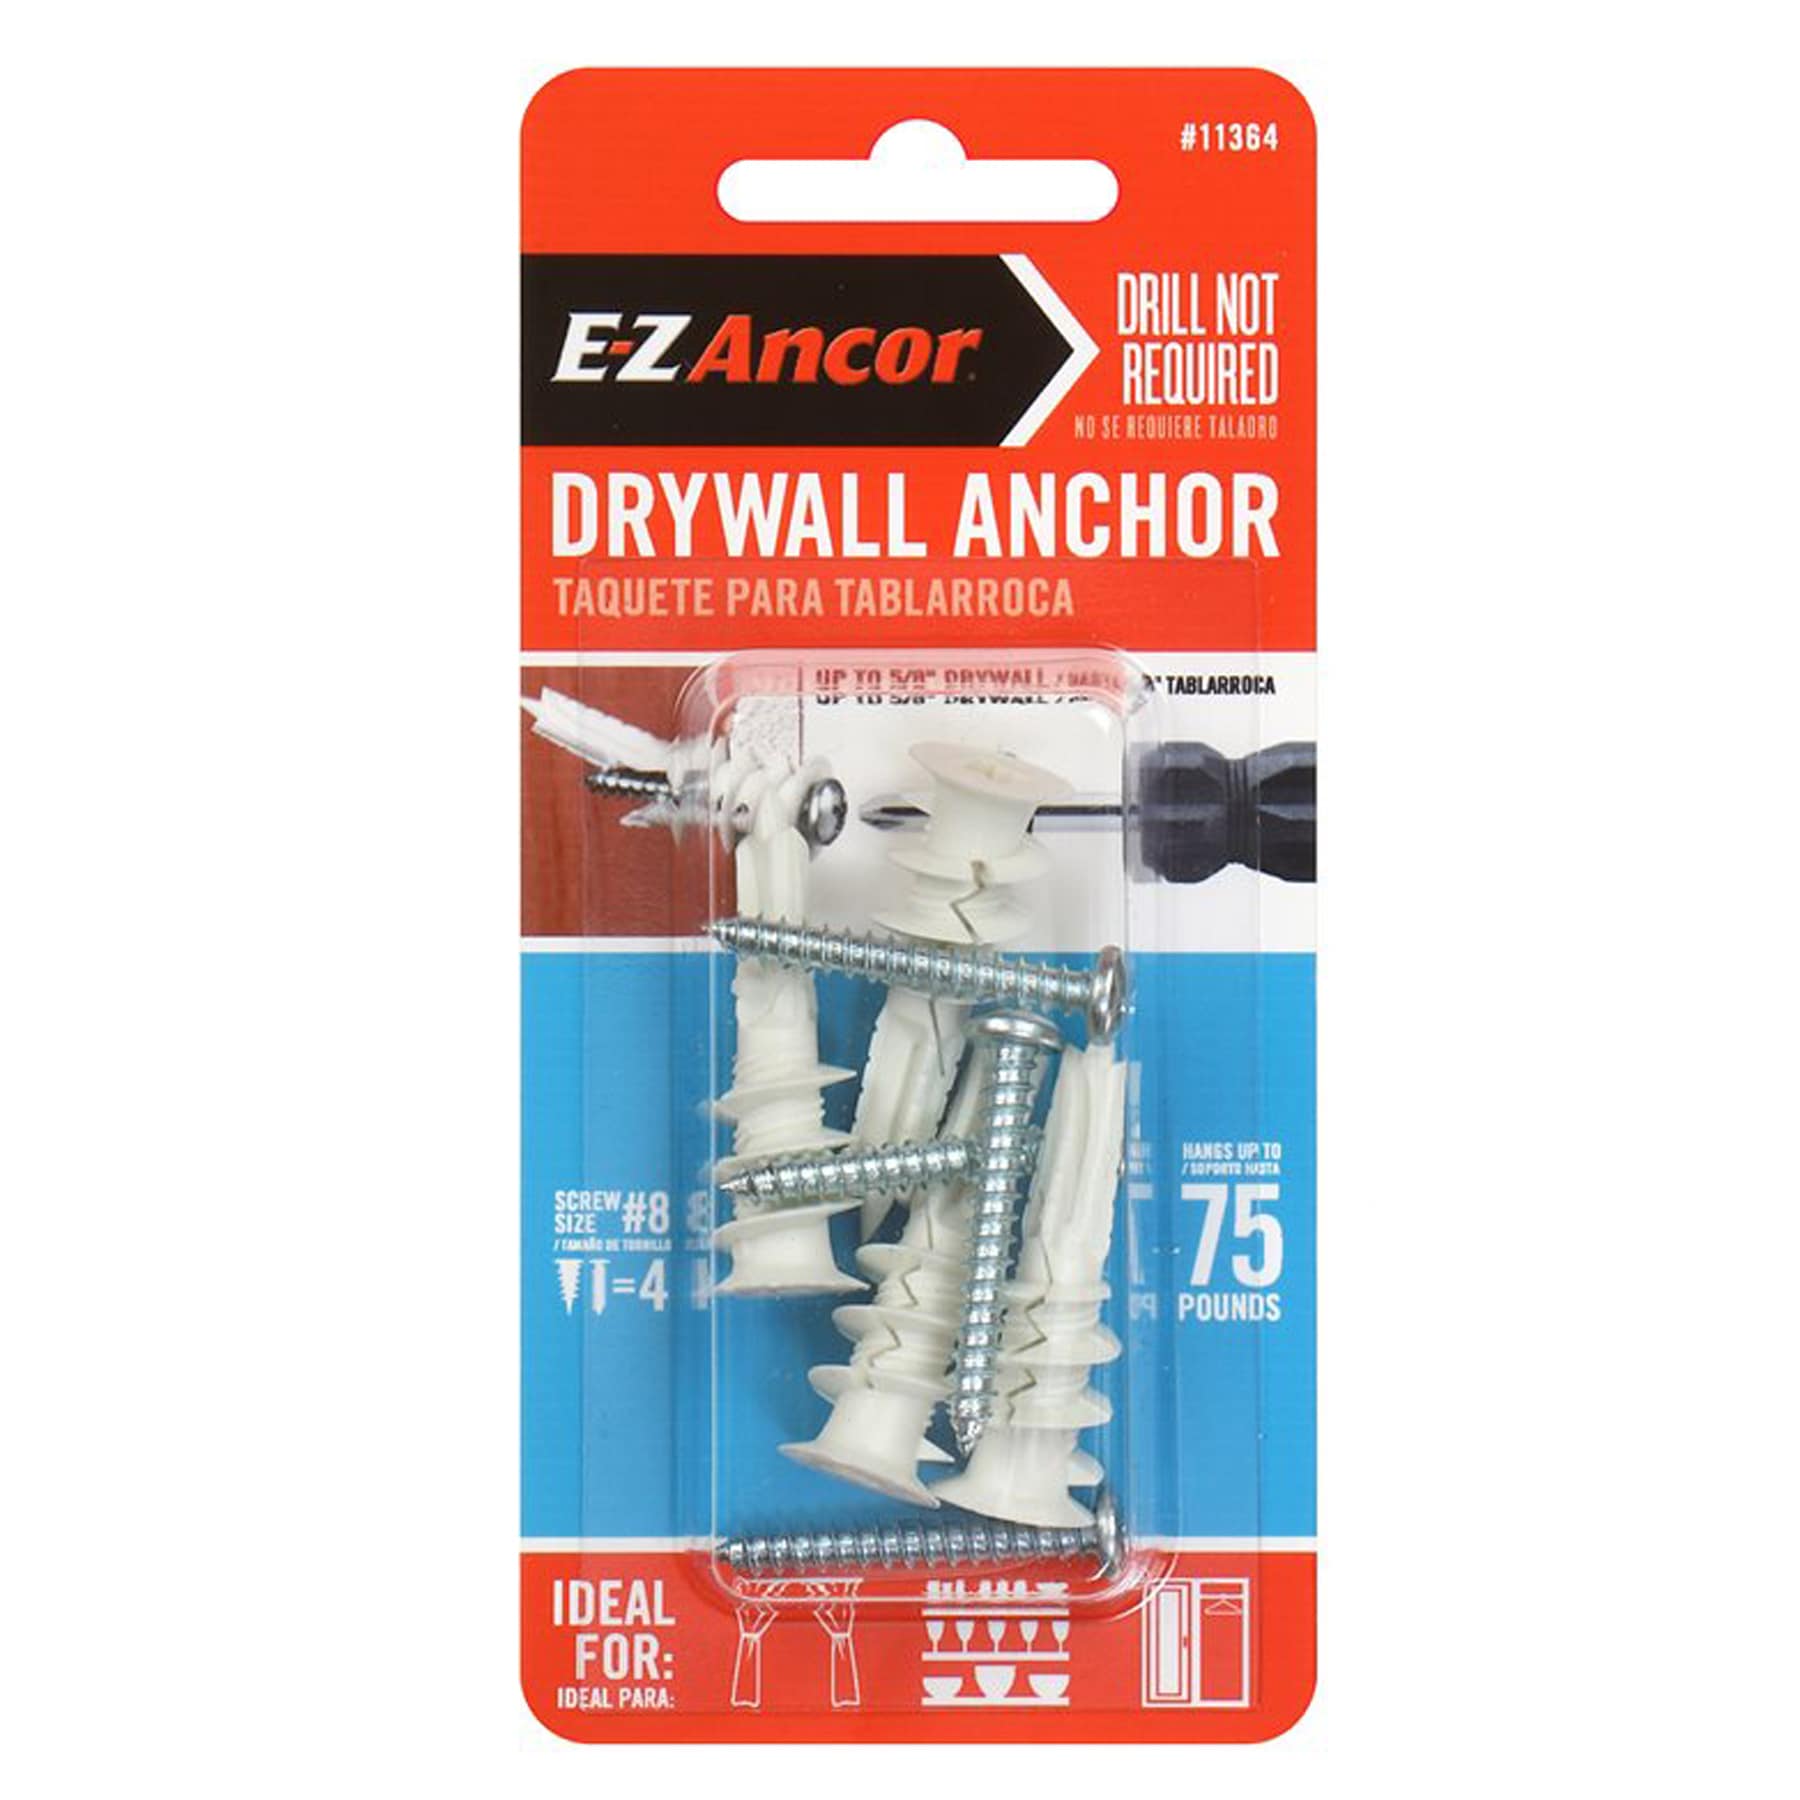 ITW E-Z Ancor 11364 - Twist-N-Lock 75 lb. Self-Drilling Drywall Anchor